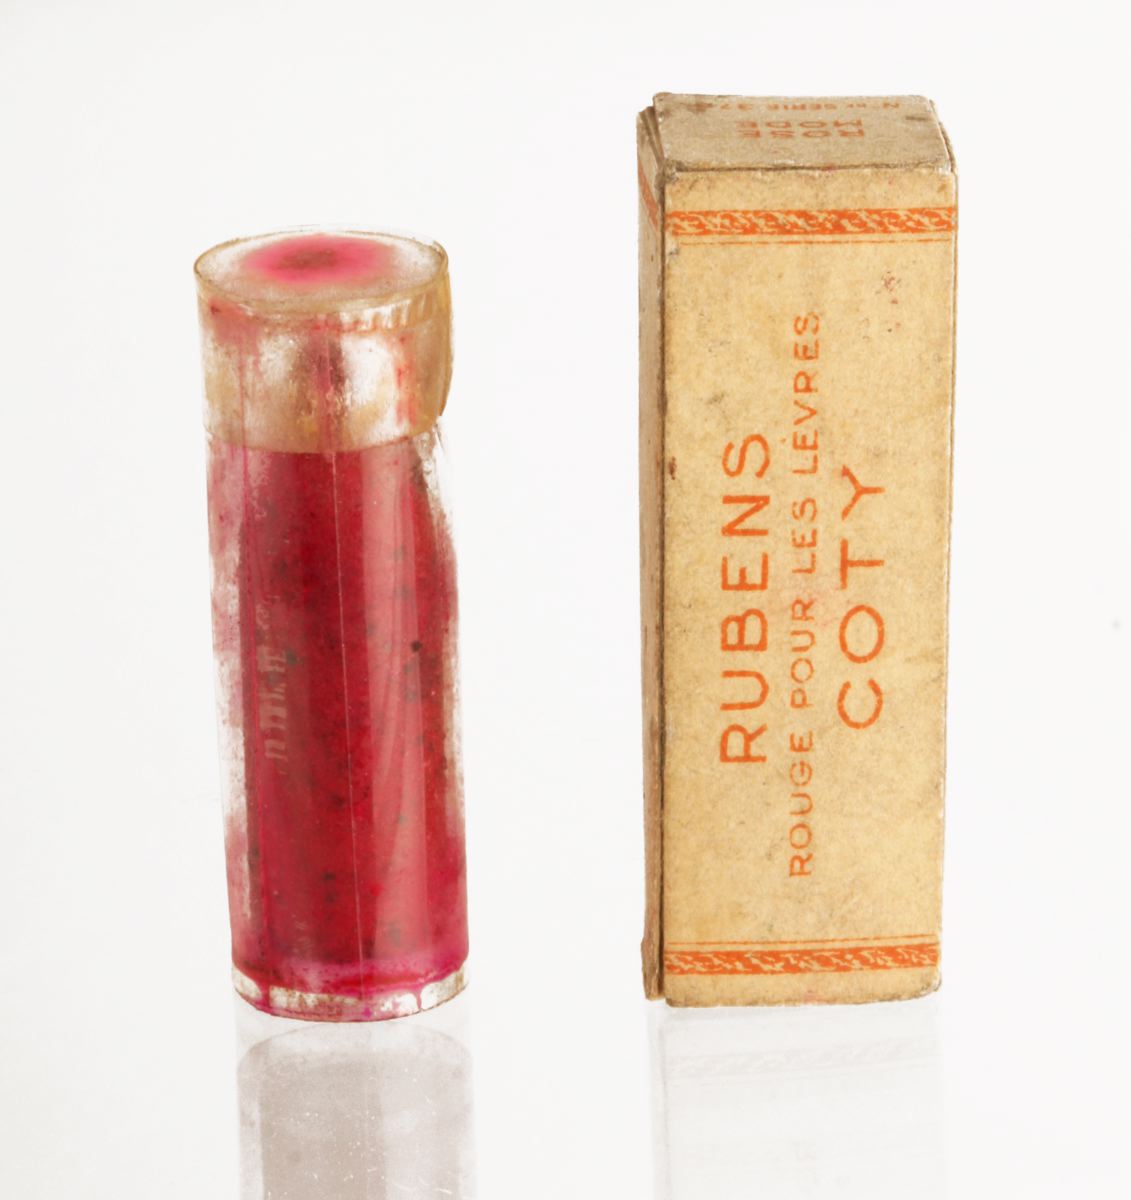 Raisin de recharge pour rouge à lèvres "Rubens" de Coty